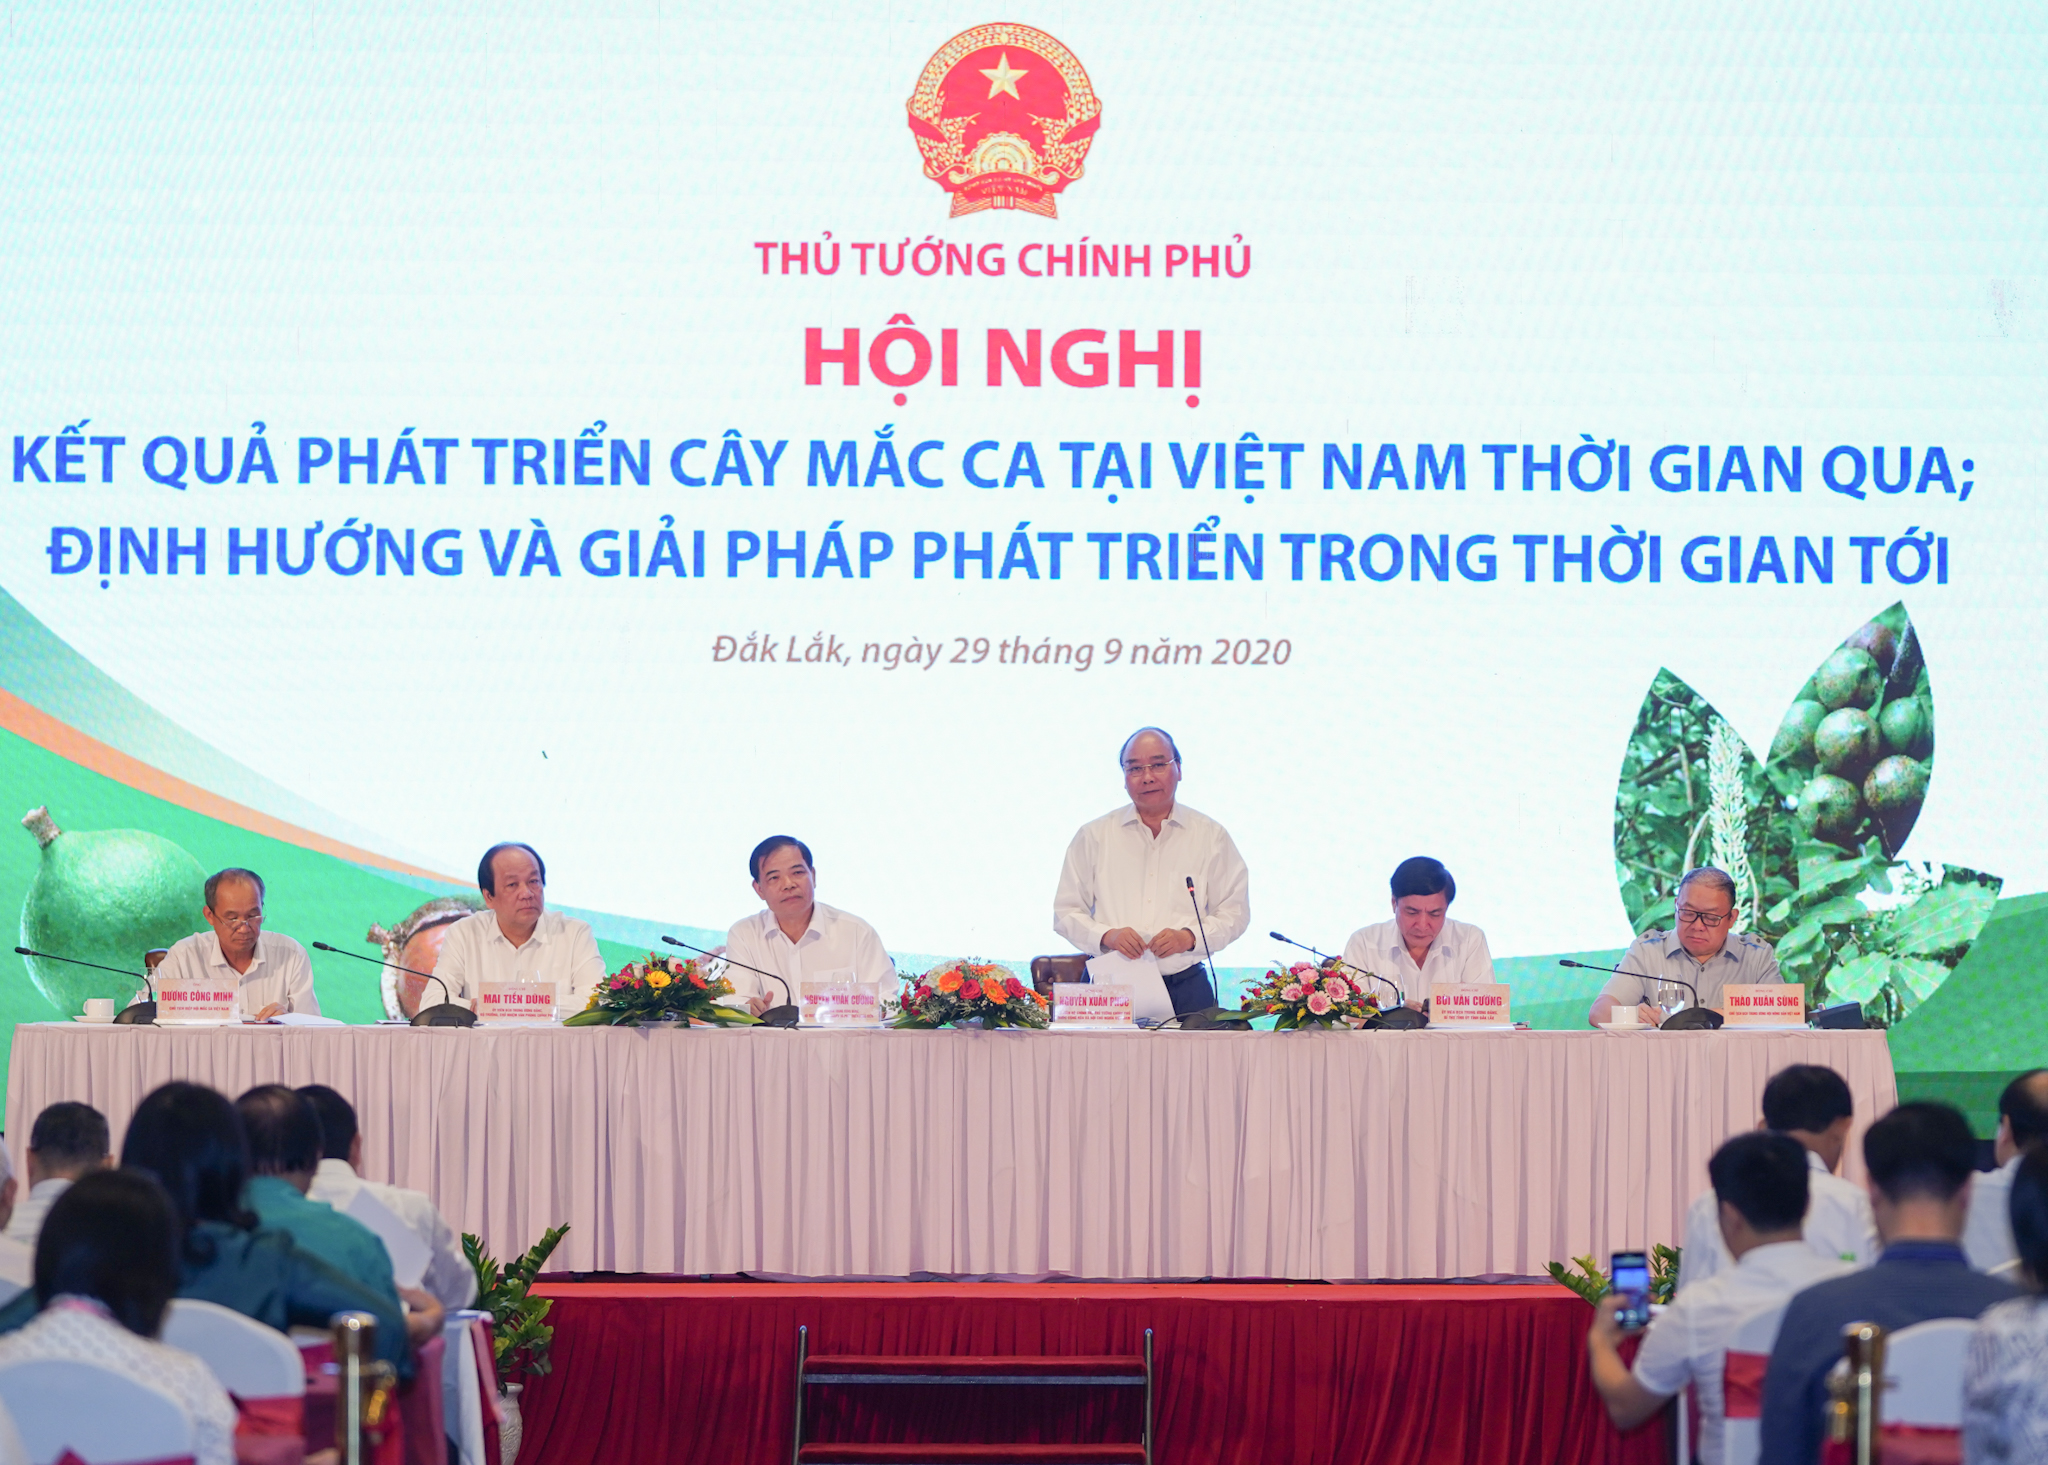 Thủ tướng Nguyễn Xuân Phúc tai Hội nghị về phát triển cây mắc ca tại TP. Buôn Ma Thuột. Ảnh: VGP/Quang Hiếu